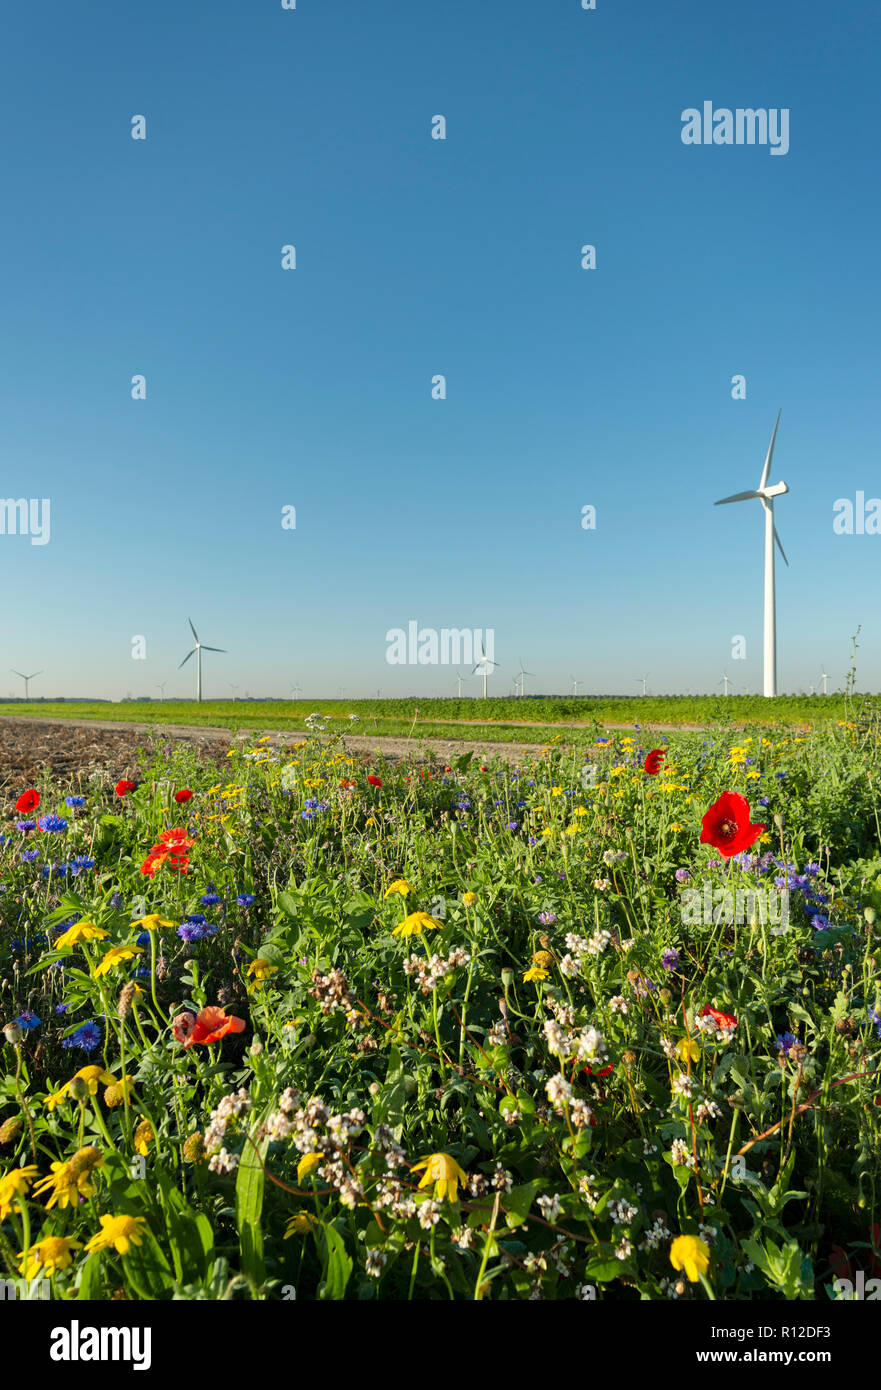 Fiori piantati lungo i campi, le turbine eoliche in background, Swifterbant, Flevoland, Paesi Bassi Foto Stock